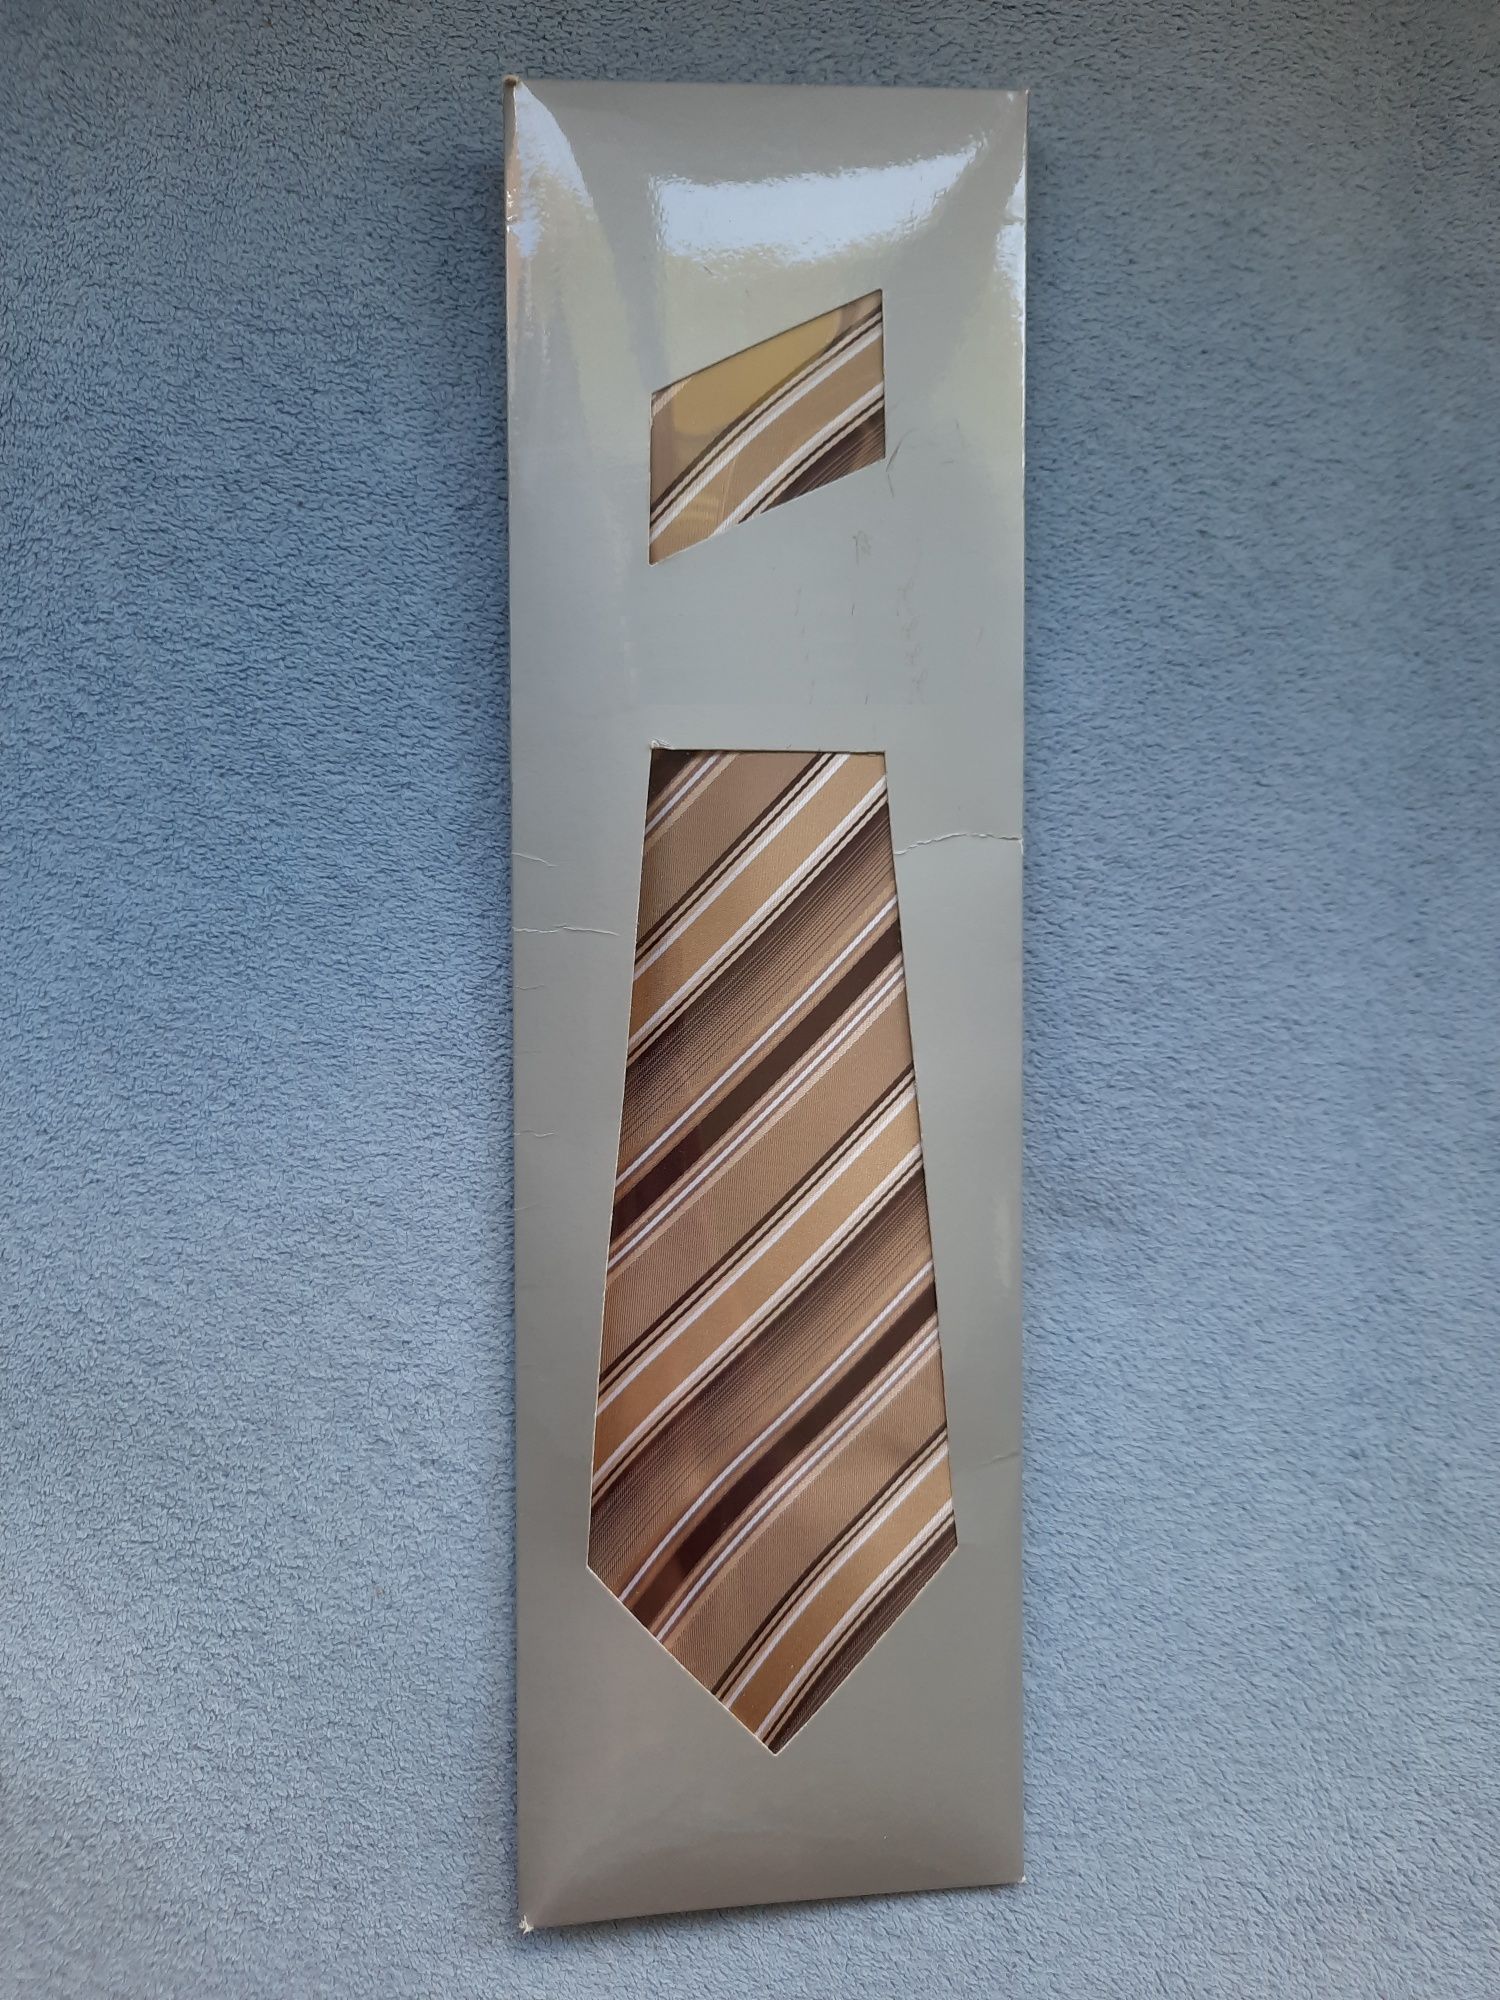 Krawat męski NEK szerokość 95mm długość 145mm wykonany ze specjalnie w